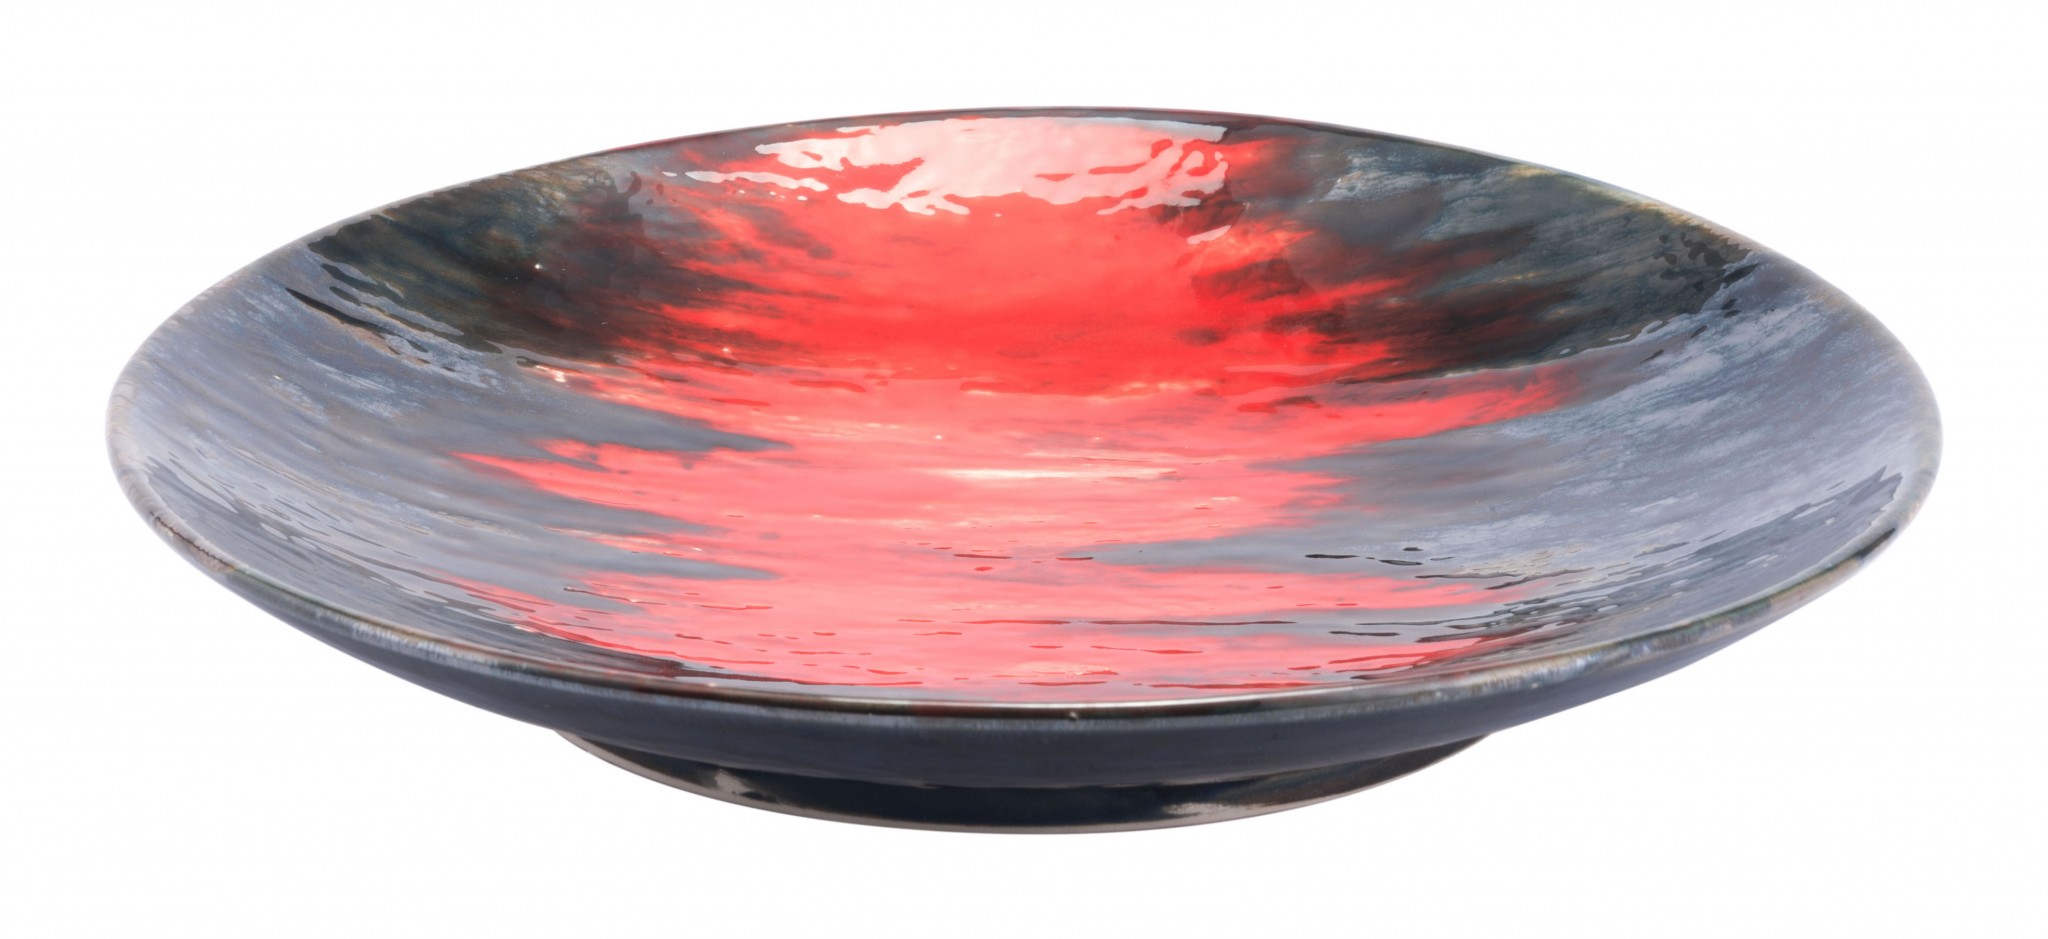 14.6" x 14.6" x 2.4" Black & Red, Ceramic, Plate